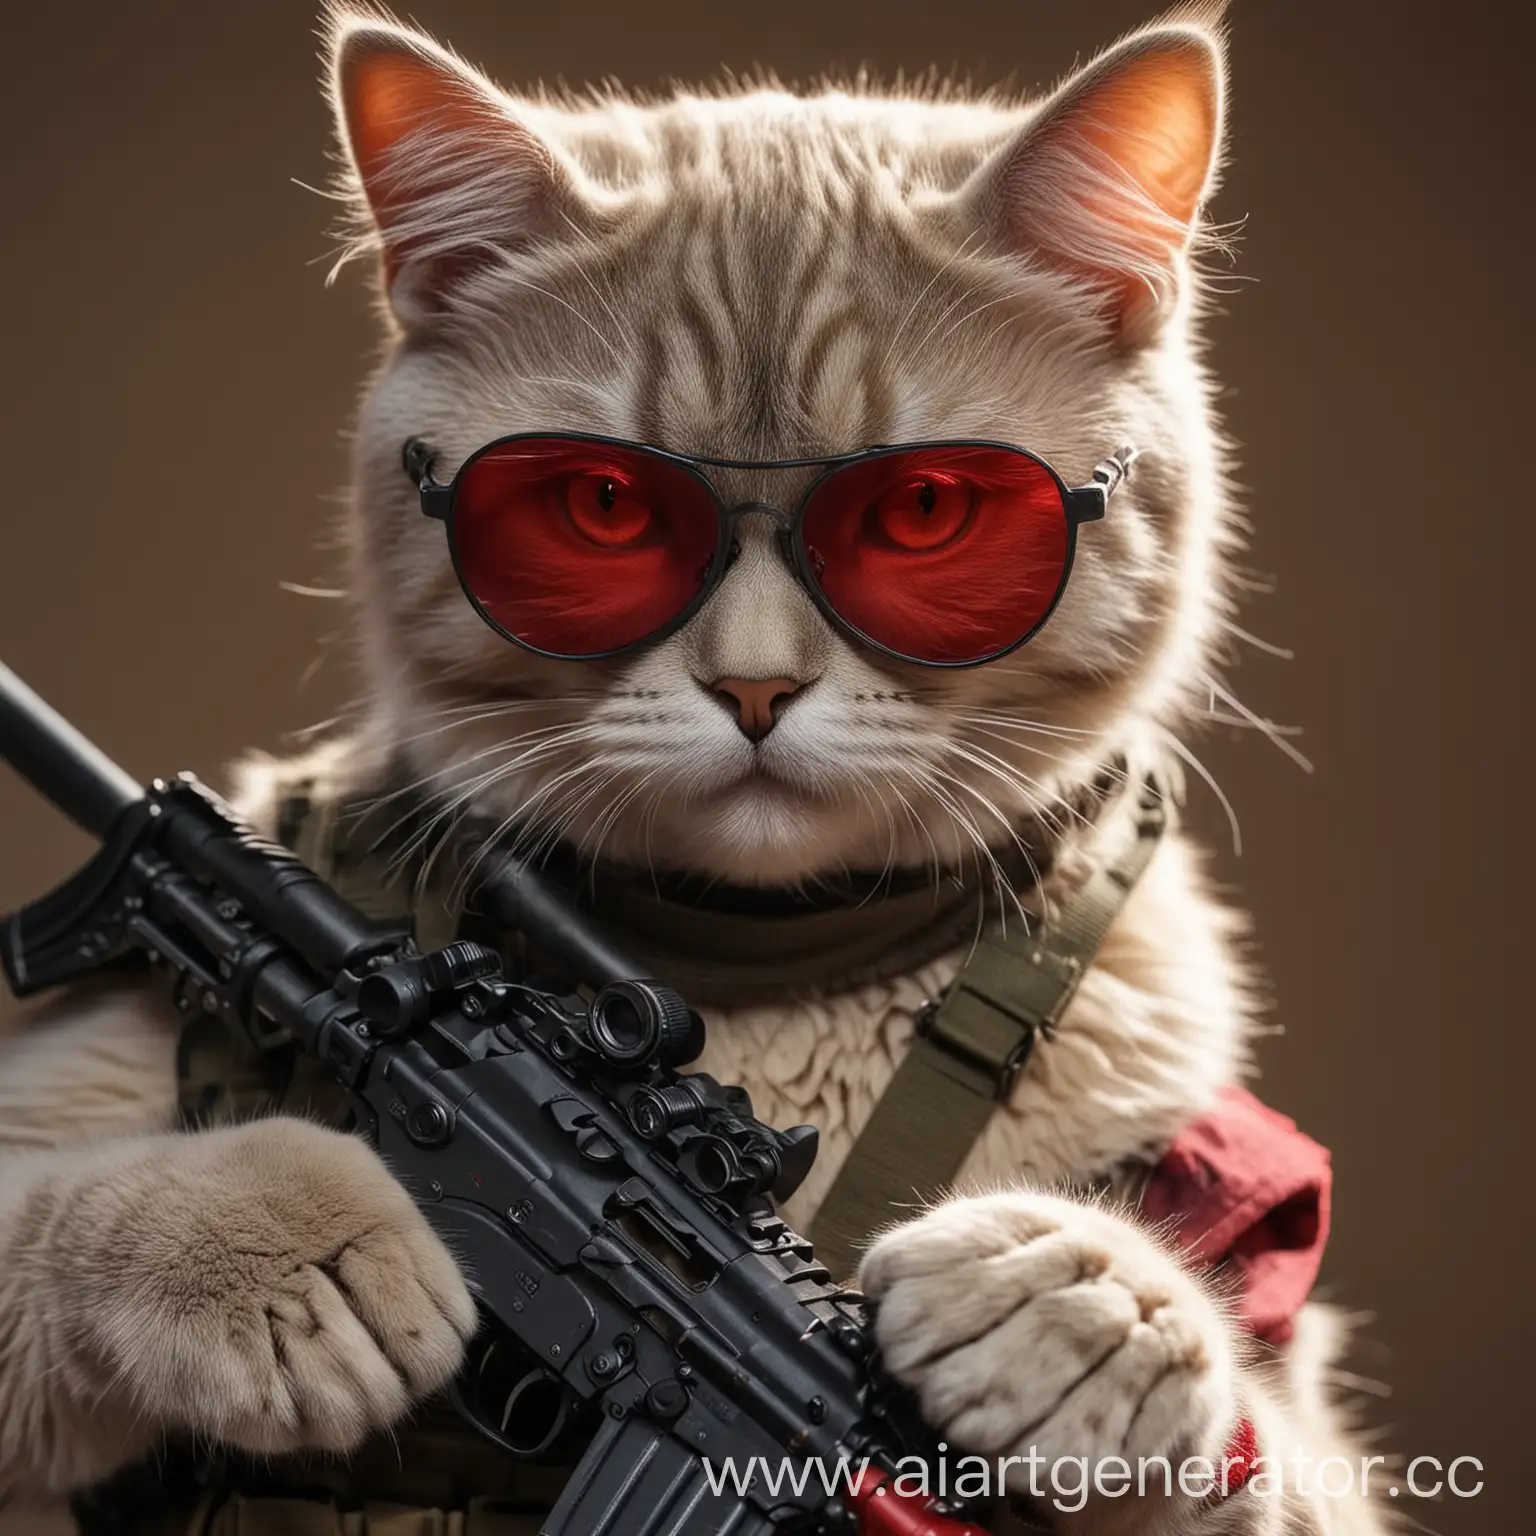 кот,в экипировке,в очках с красными стеклами,в руках ак-47,4к